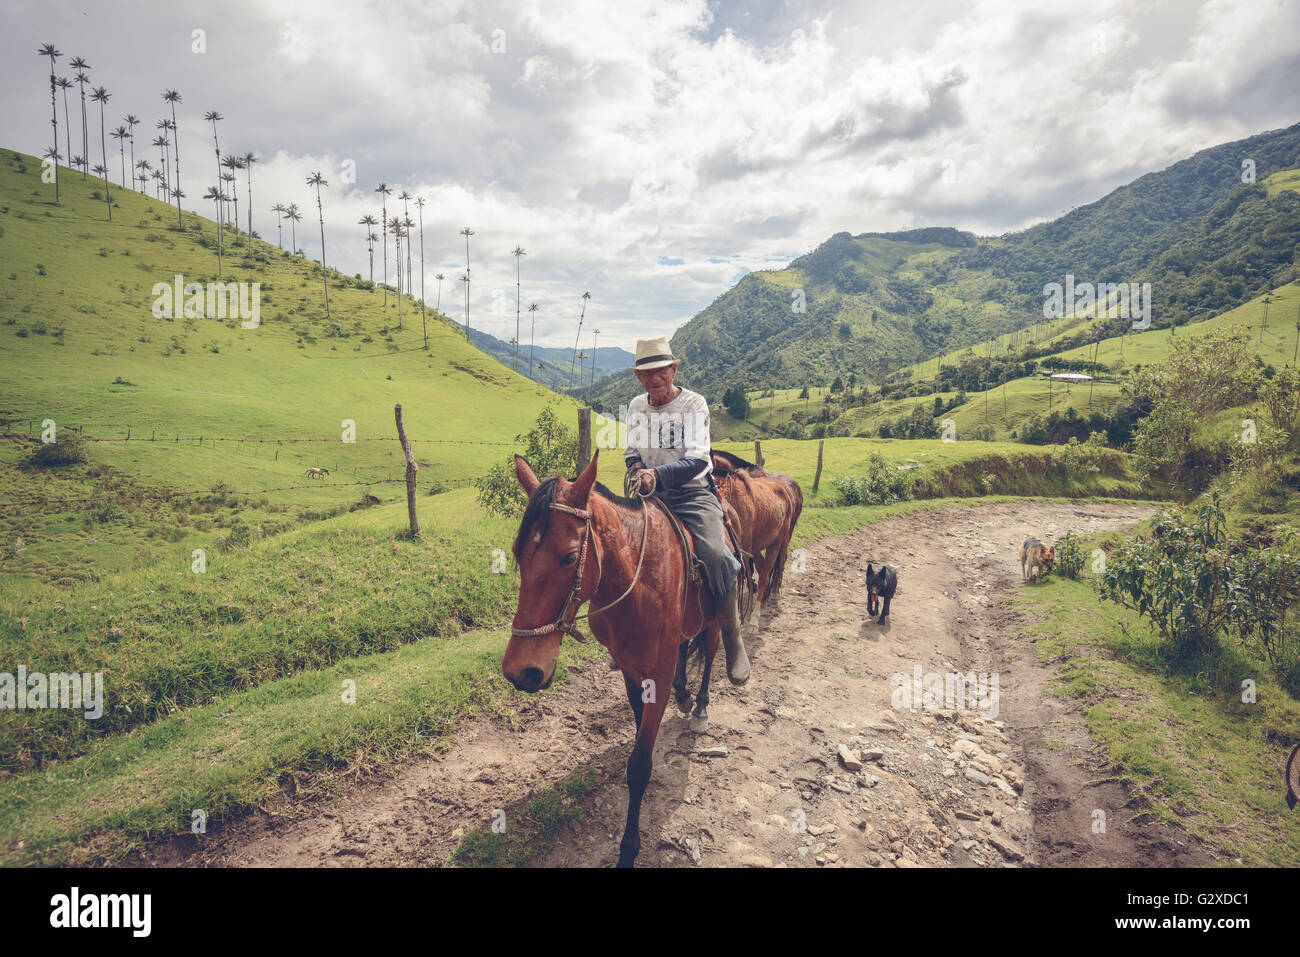 Local farmer in the Cocora Valley near Salento, Colombia Stock Photo